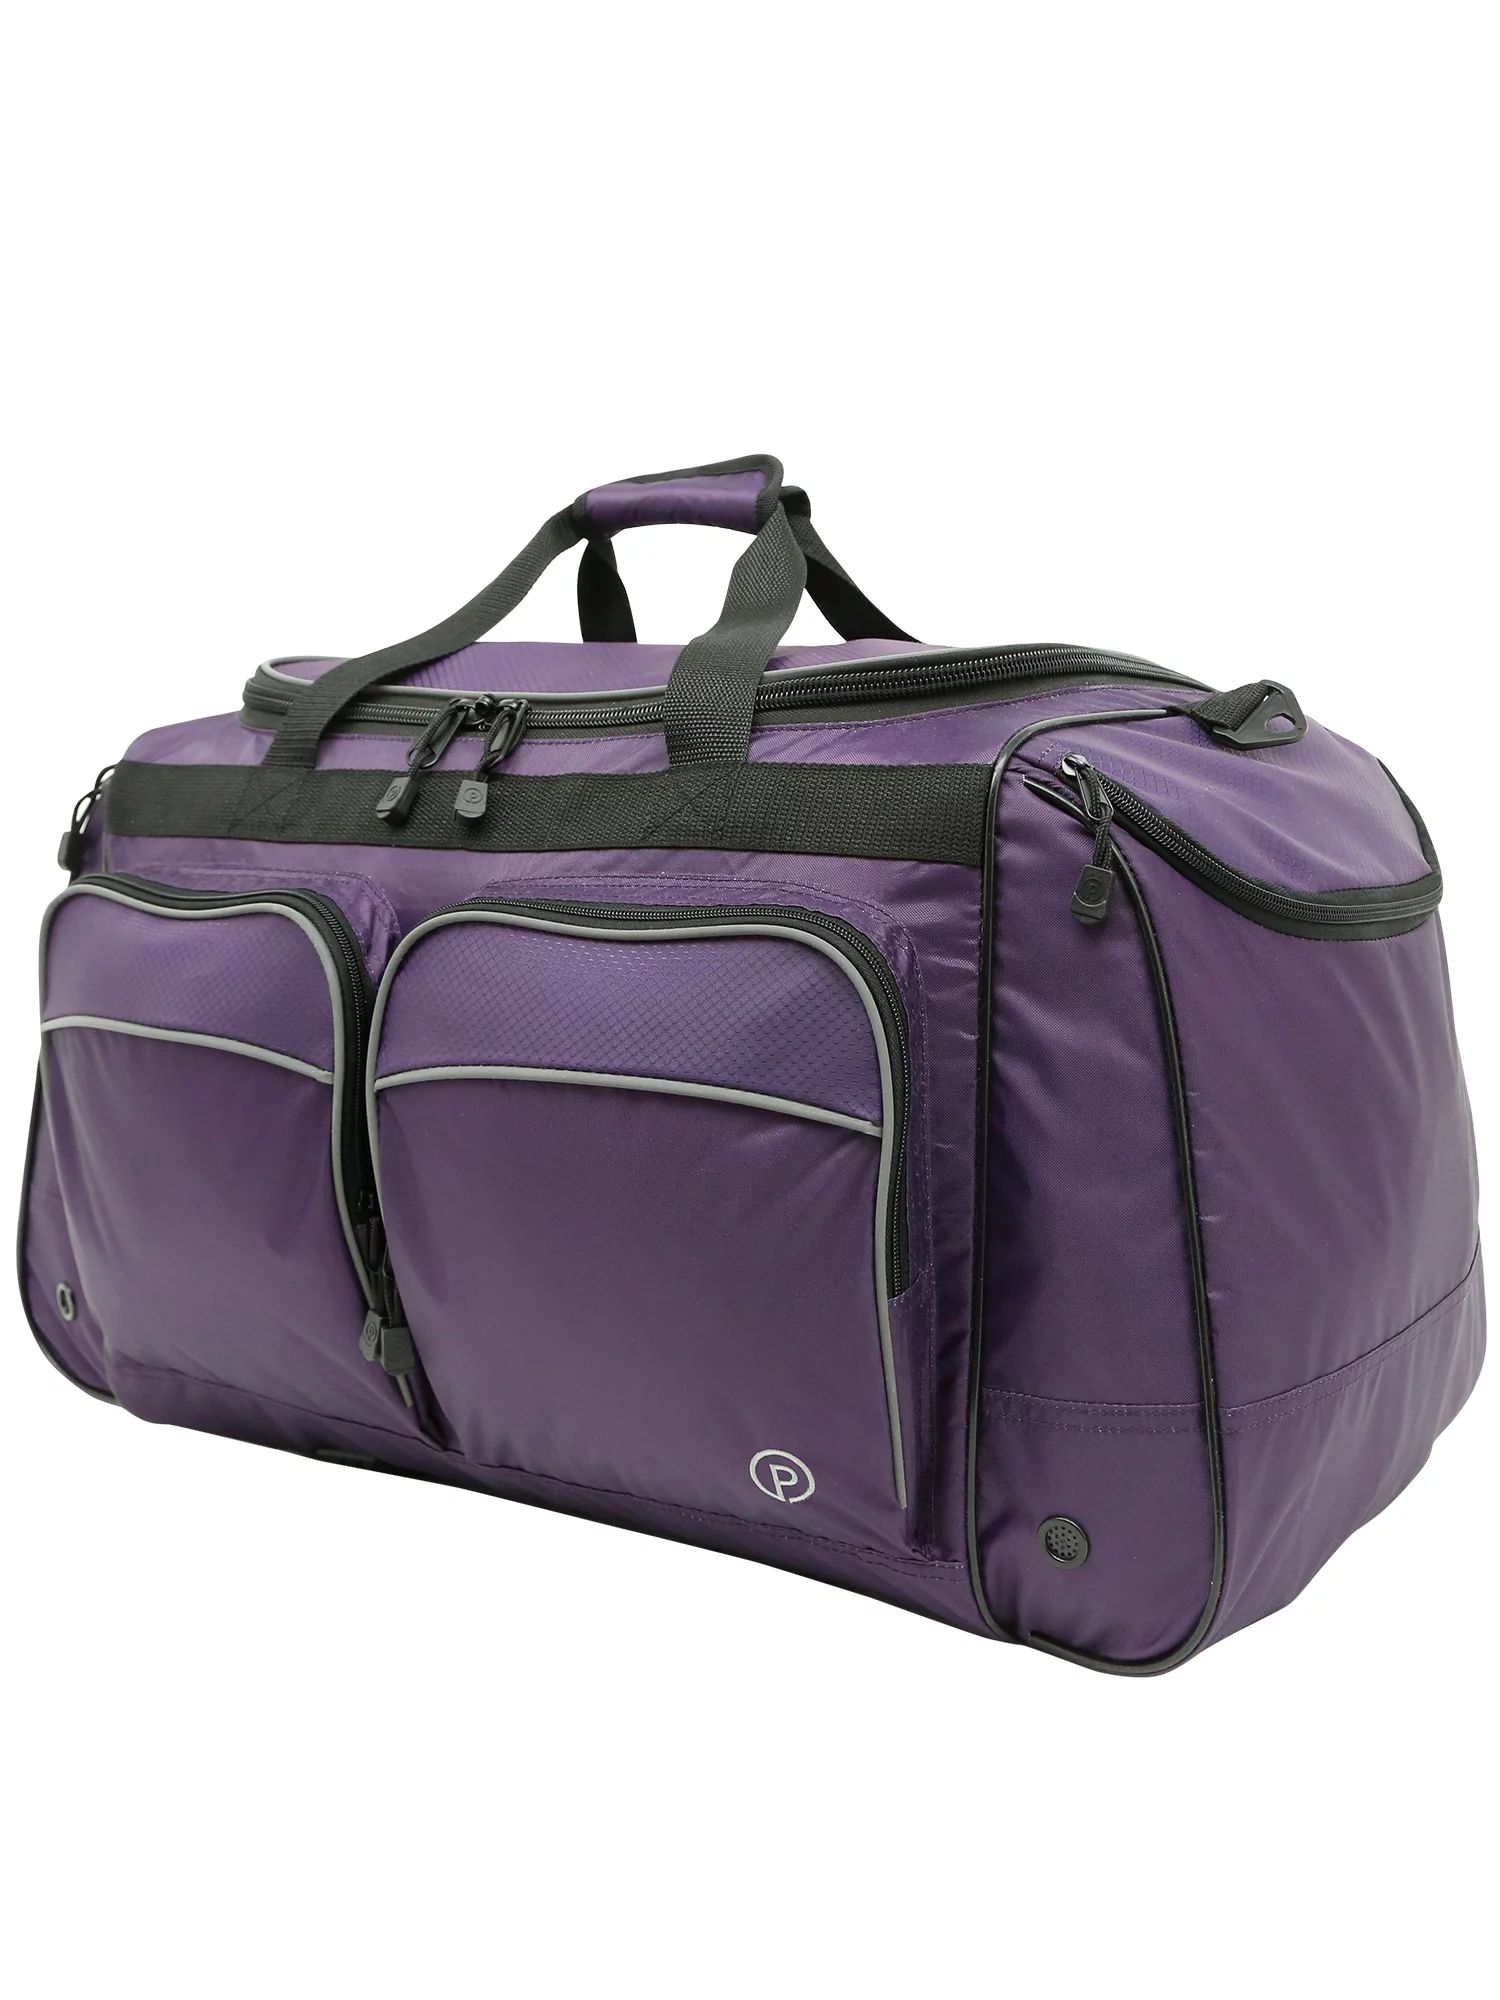 Protege 28" Sport Duffel Bag, Purple | Walmart (US)